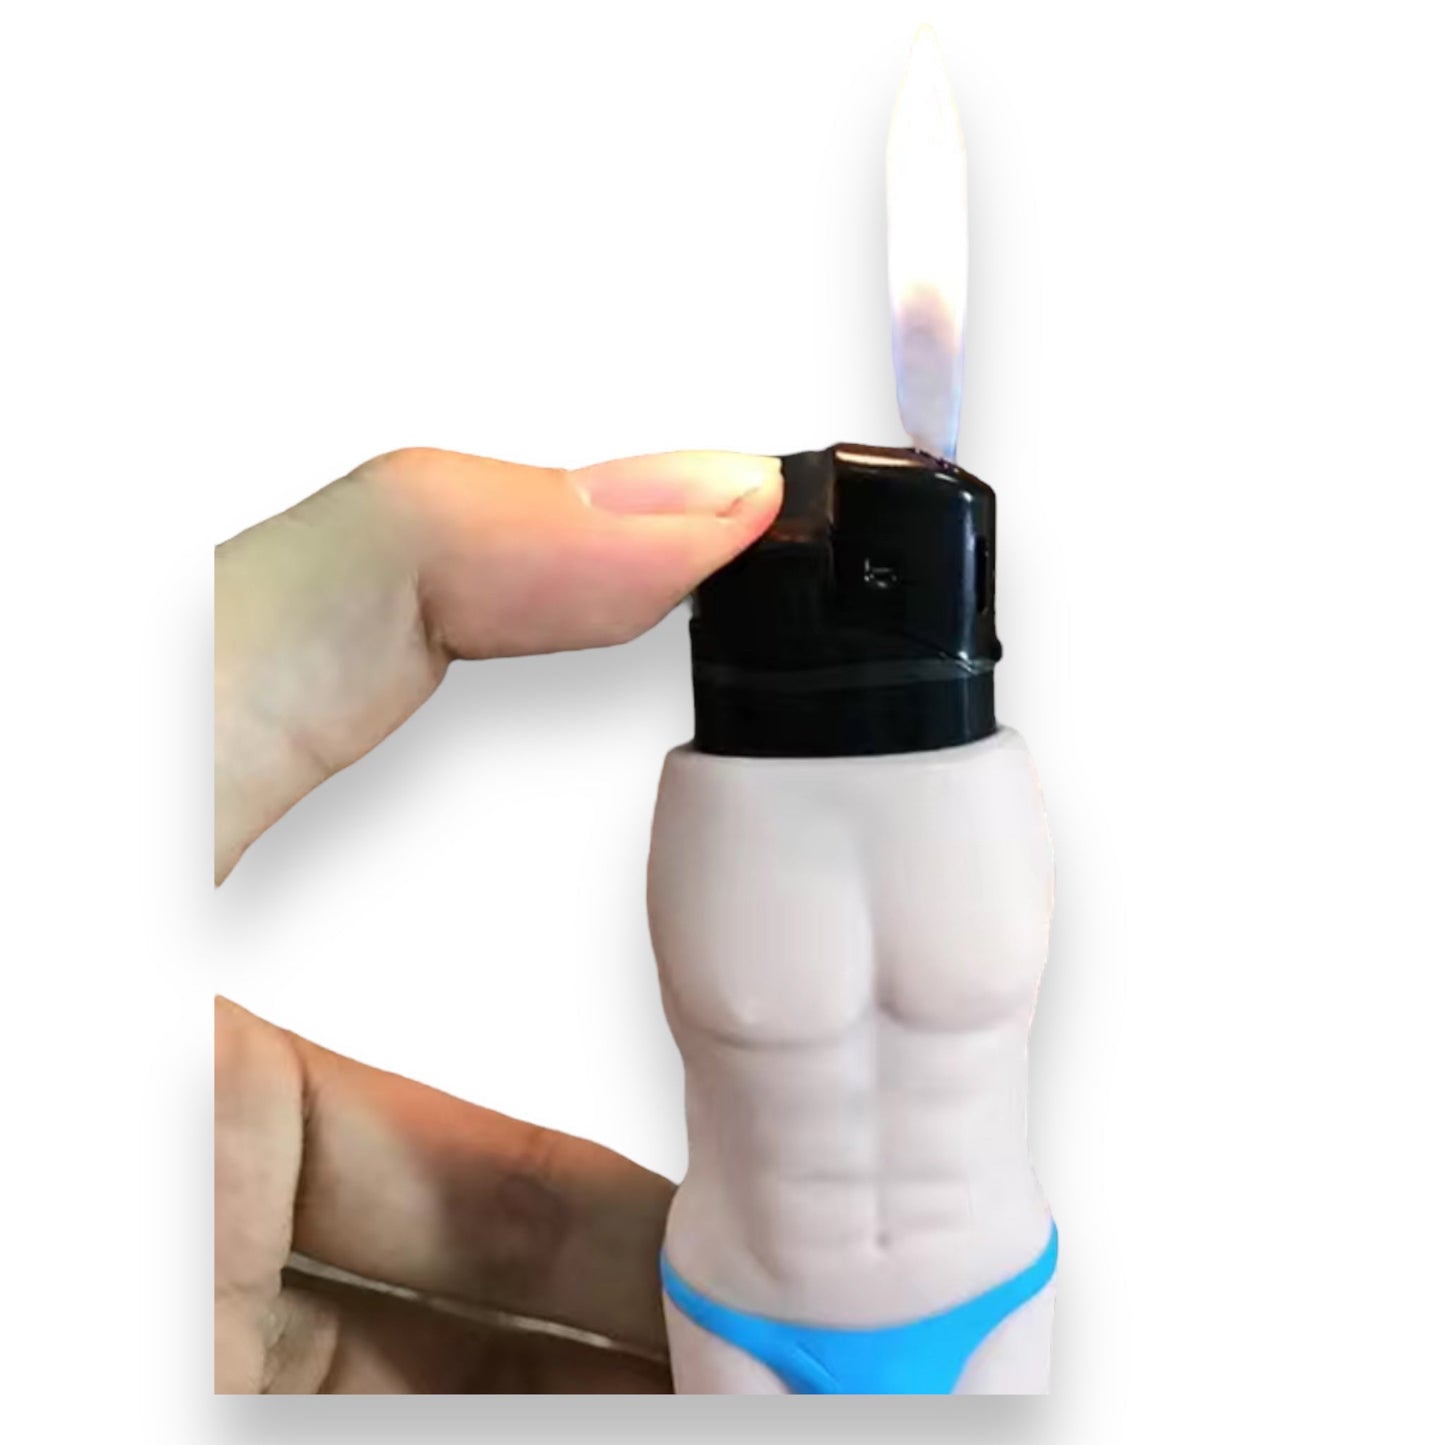 Aansteker Sleeve met Mannen of Vrouwenlichaam Design - Beschikbaar in Beige en Bruin